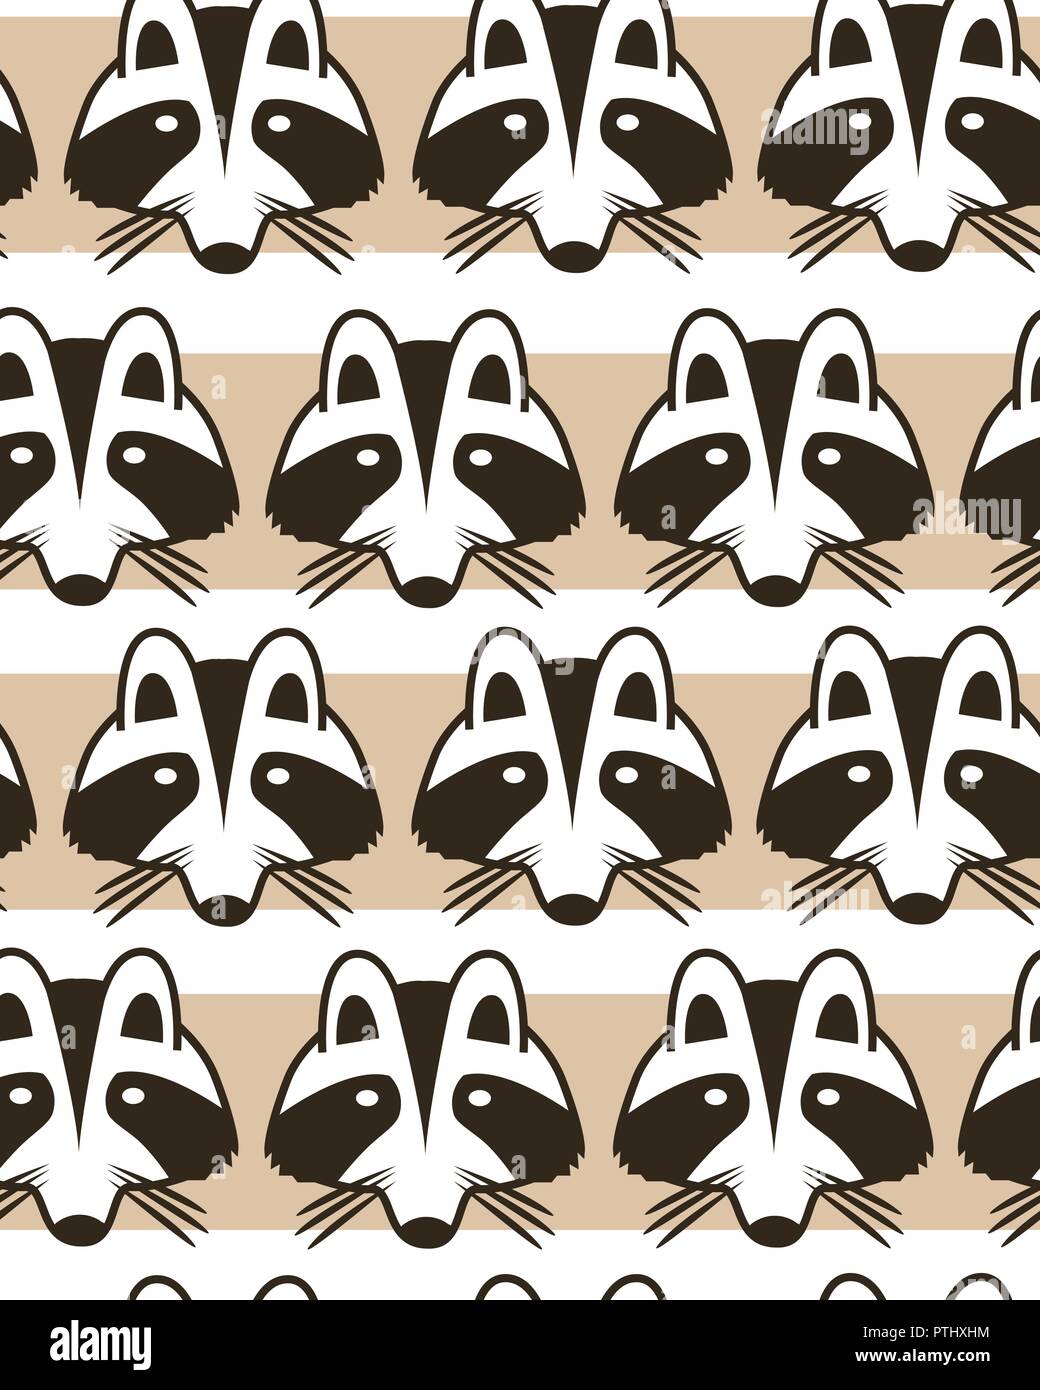 Seamless striped background con raccoon museruola. Cartoon carino raccon facce dello sfondo. Illustrazione Vettoriale Illustrazione Vettoriale